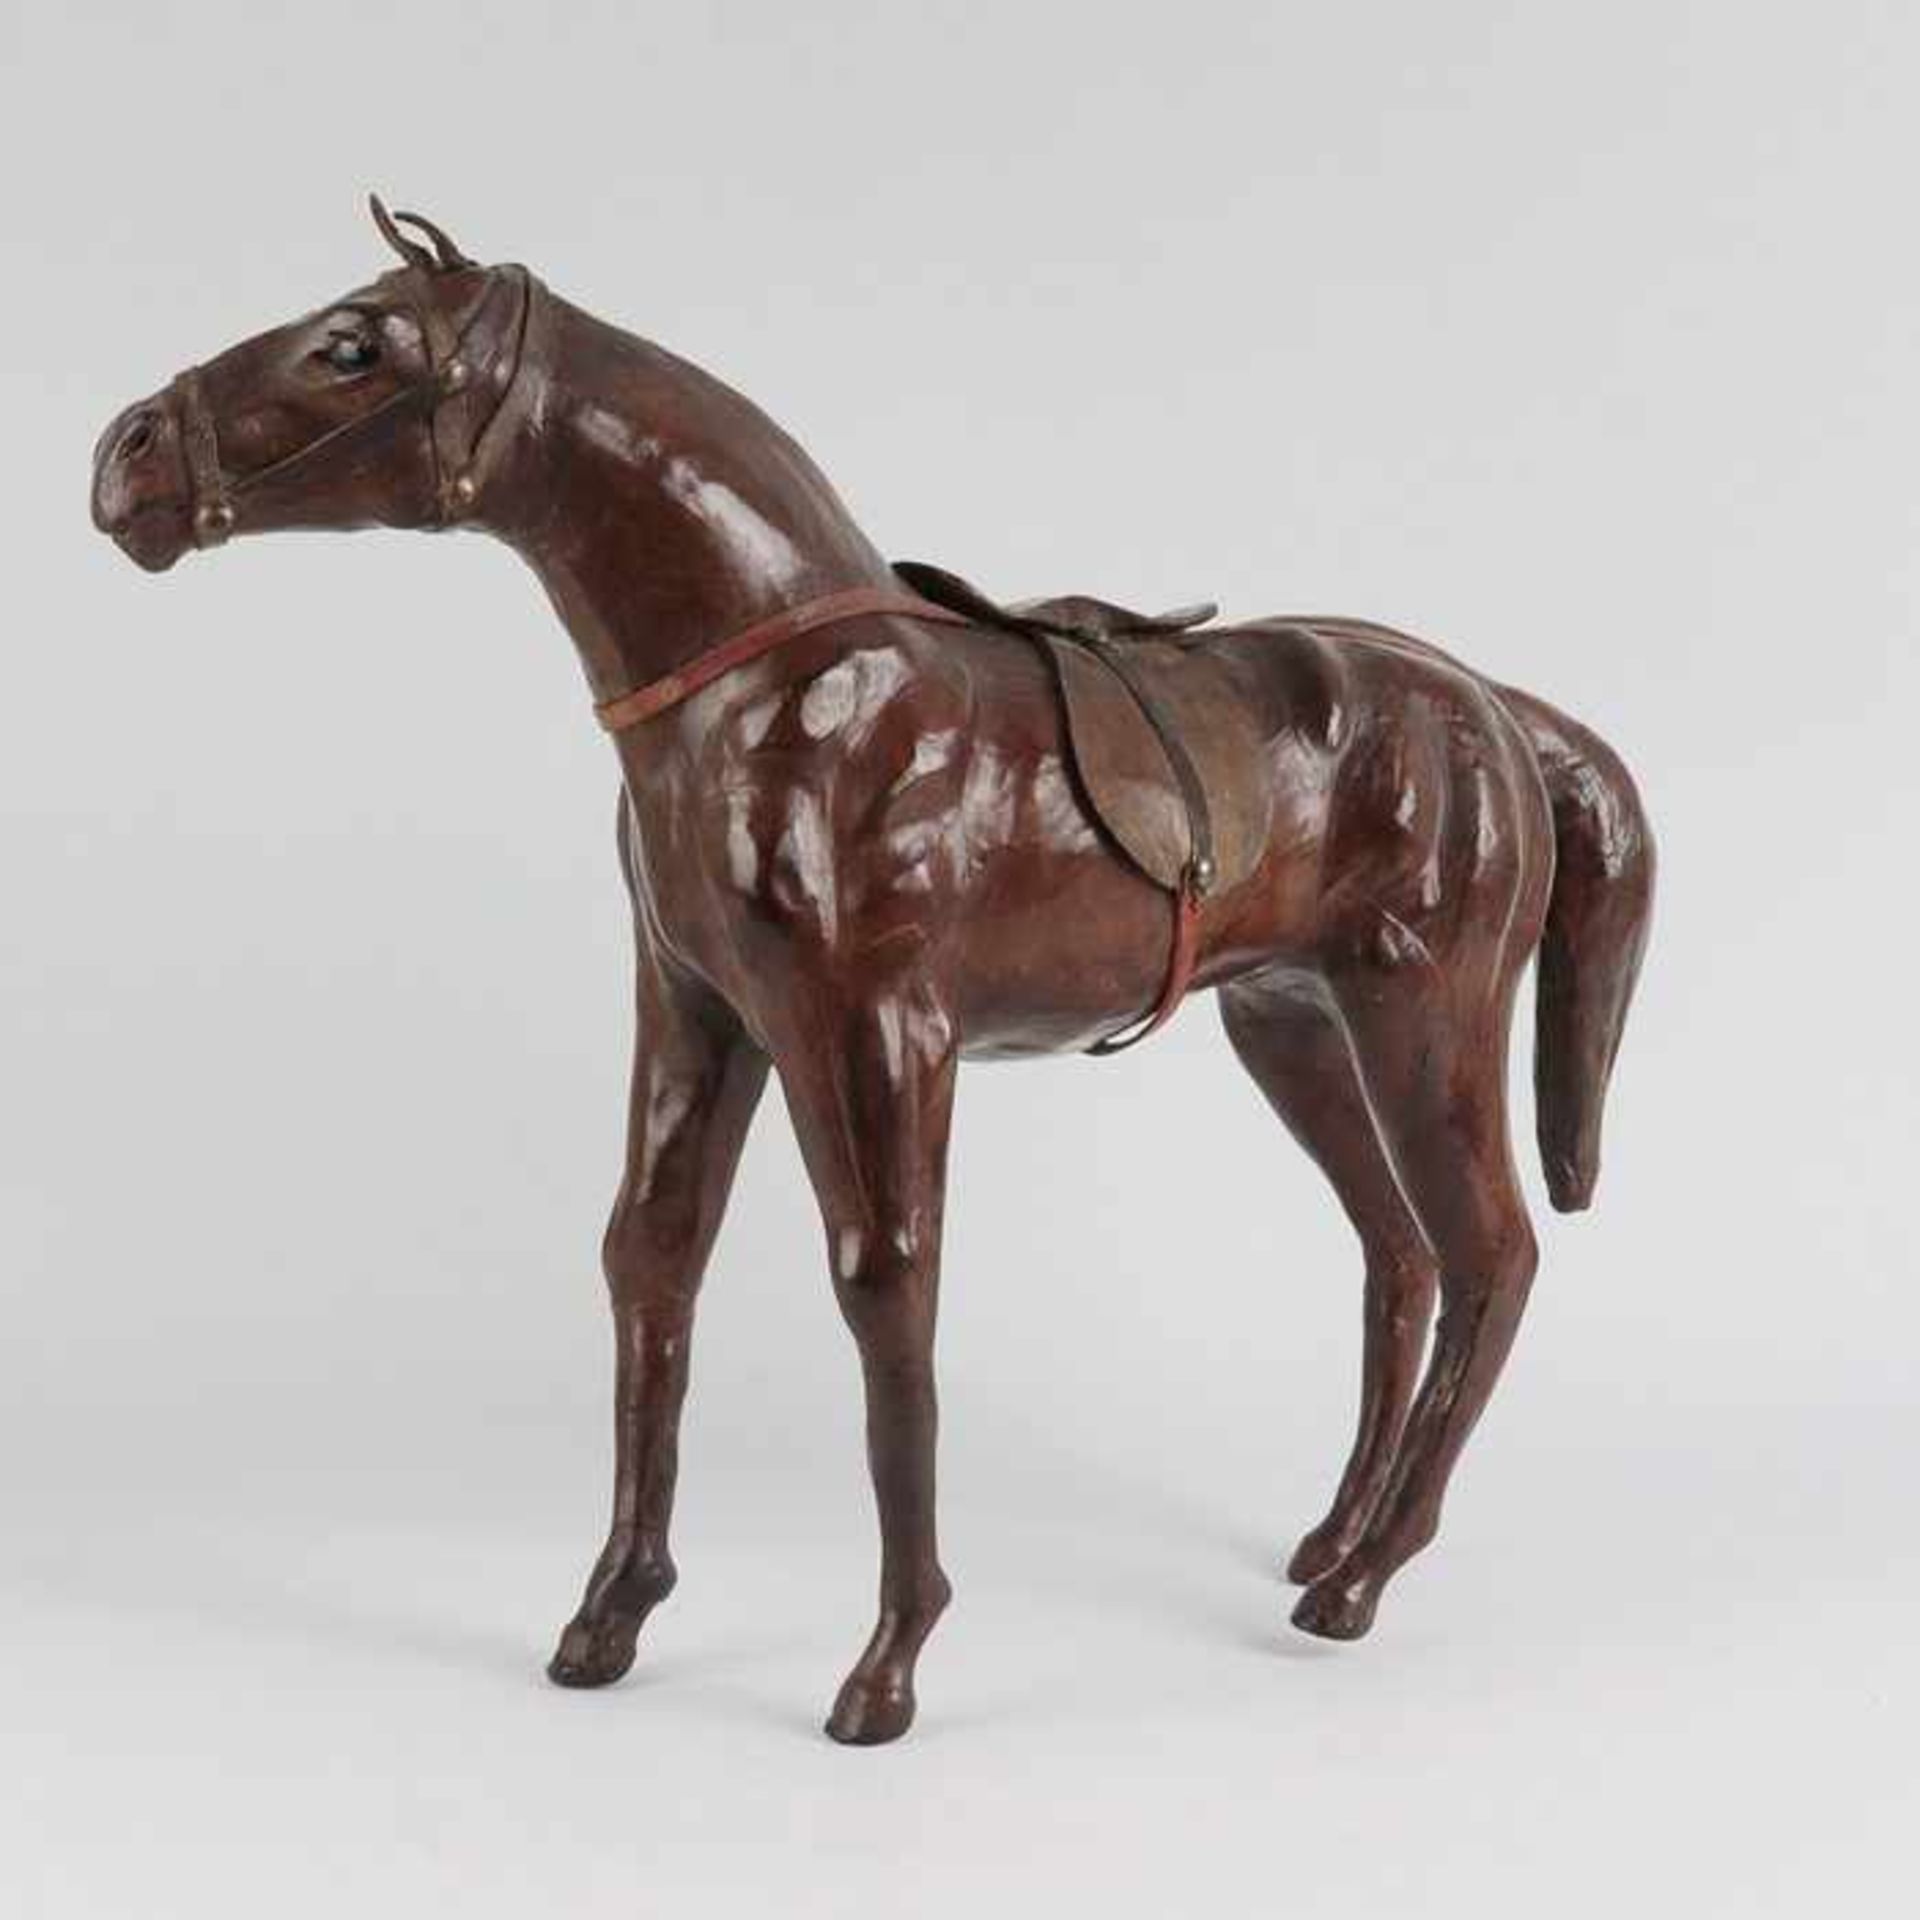 Pferd - Figurvollplast., naturalist. gestaltete Figur eines Pferdes, lederbezogen, Glasaugen, mit - Bild 2 aus 3